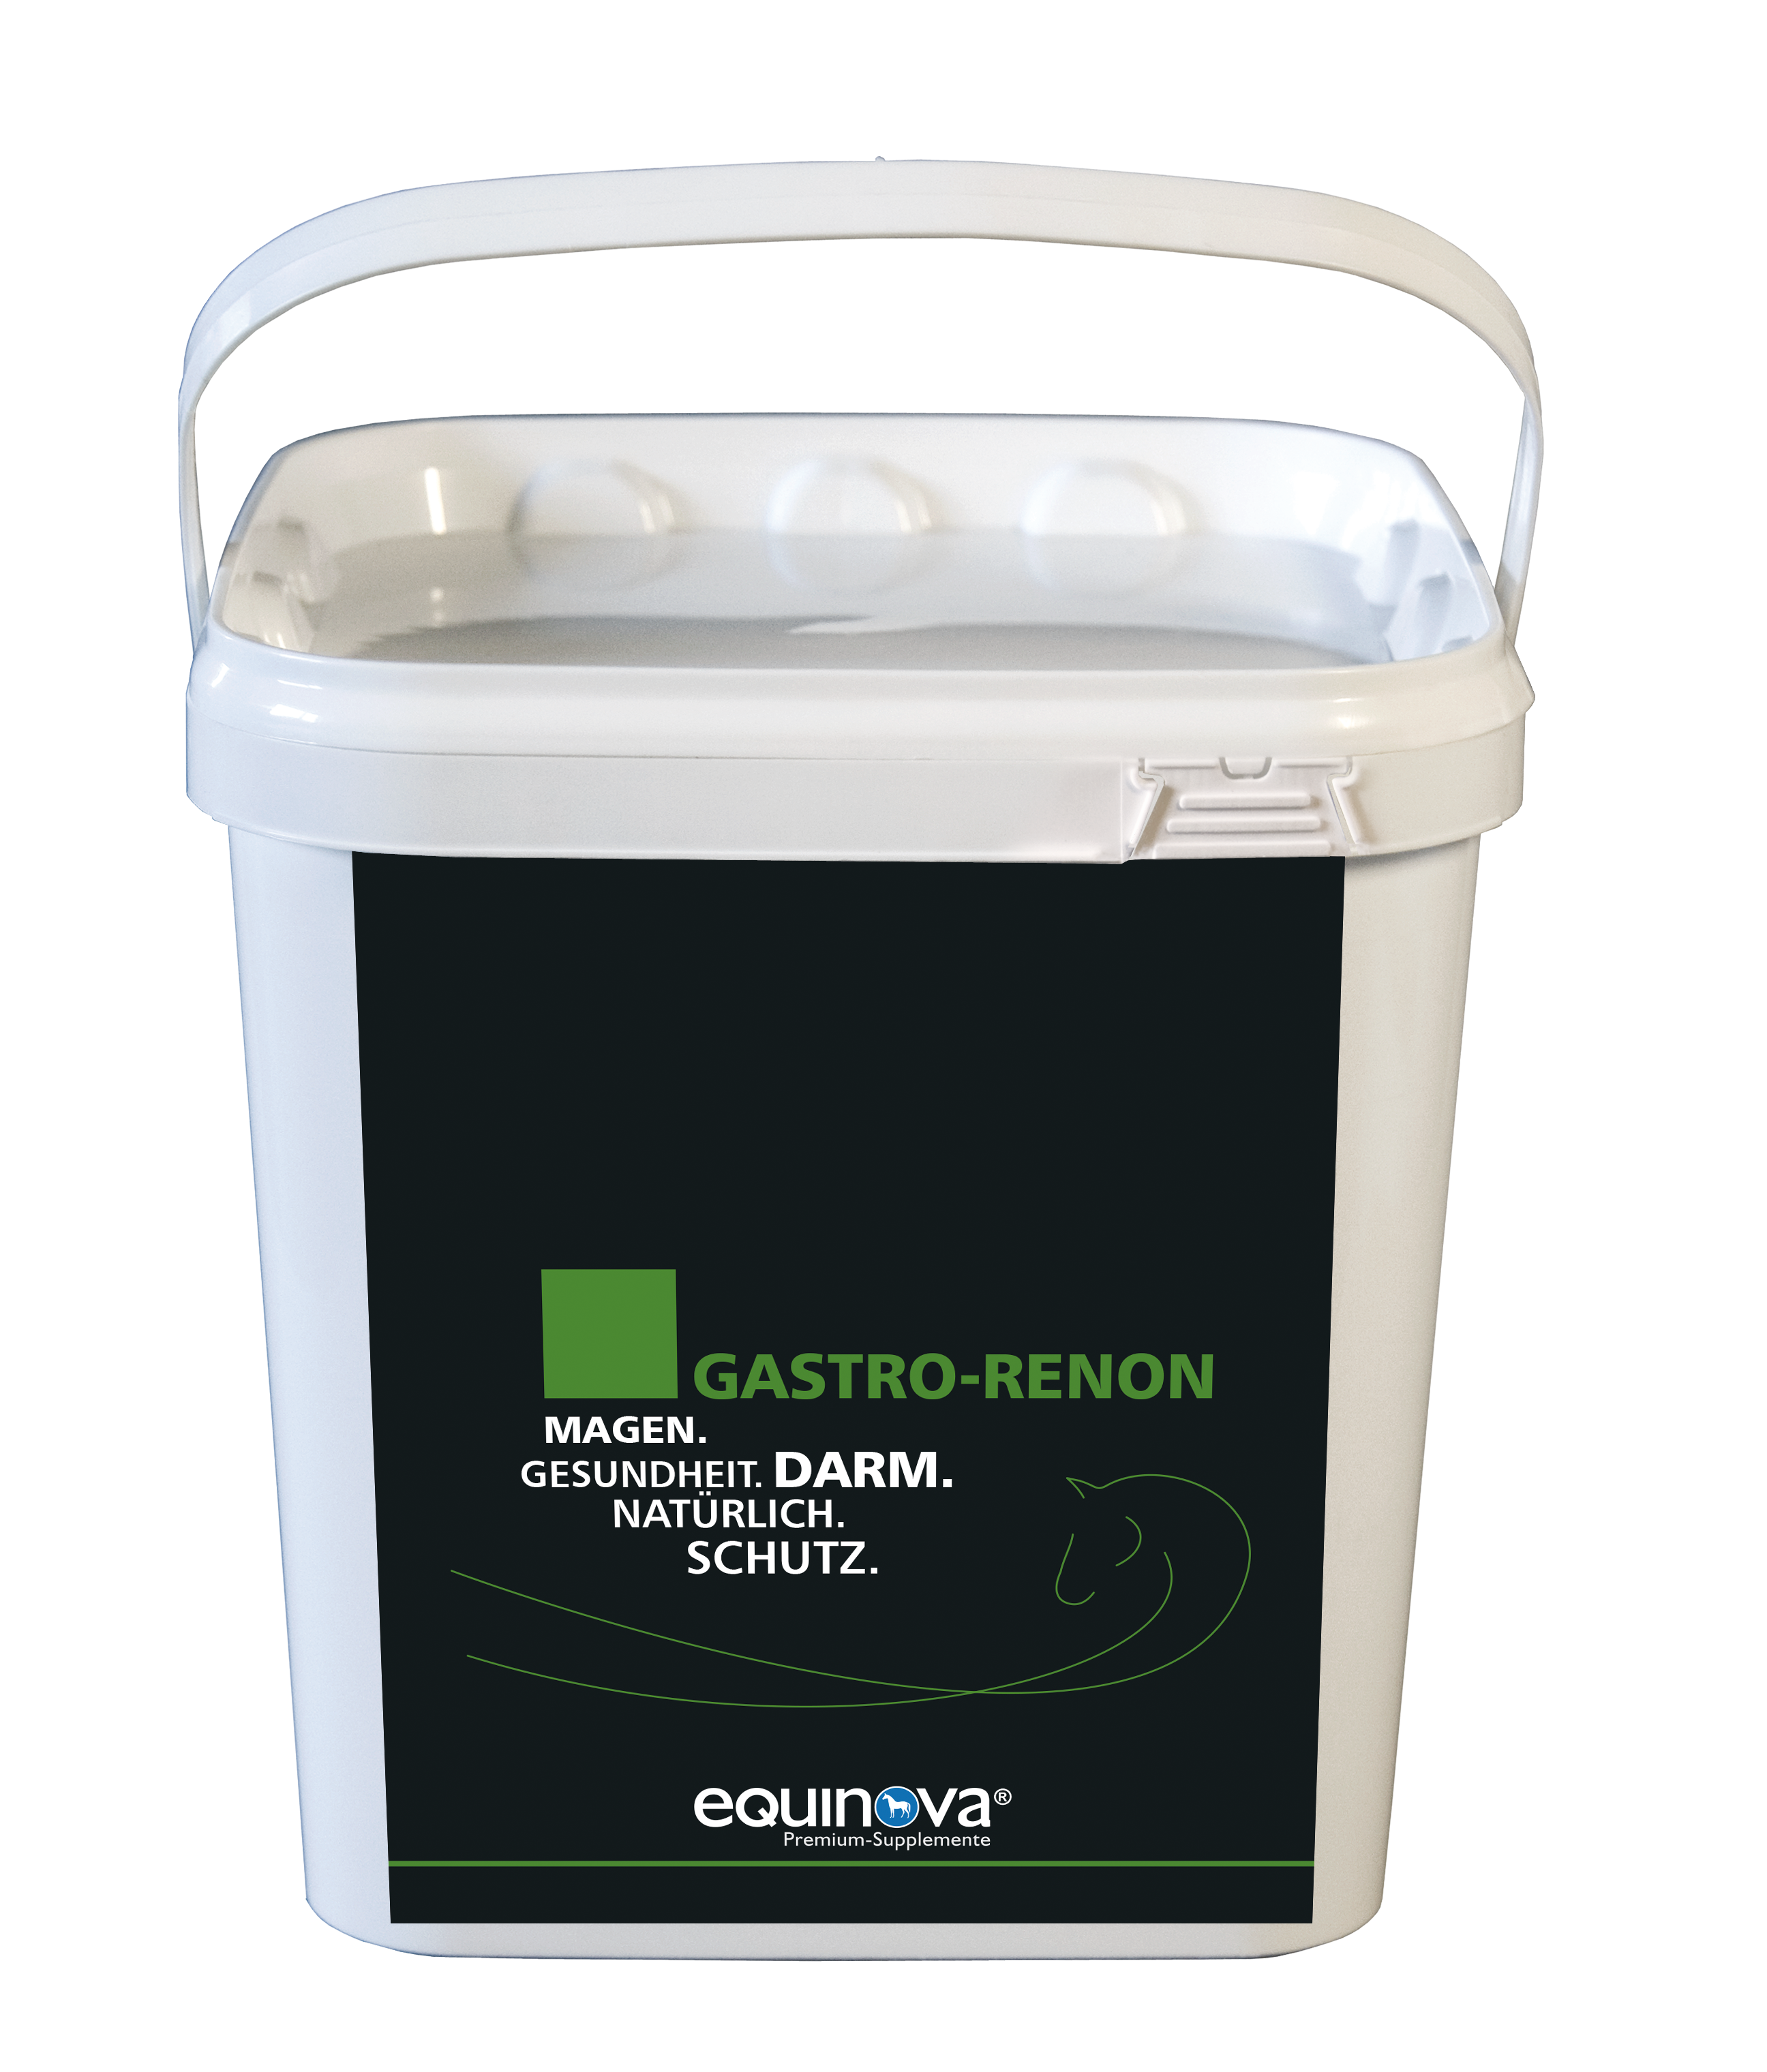 Equinova® Gastro-Renon